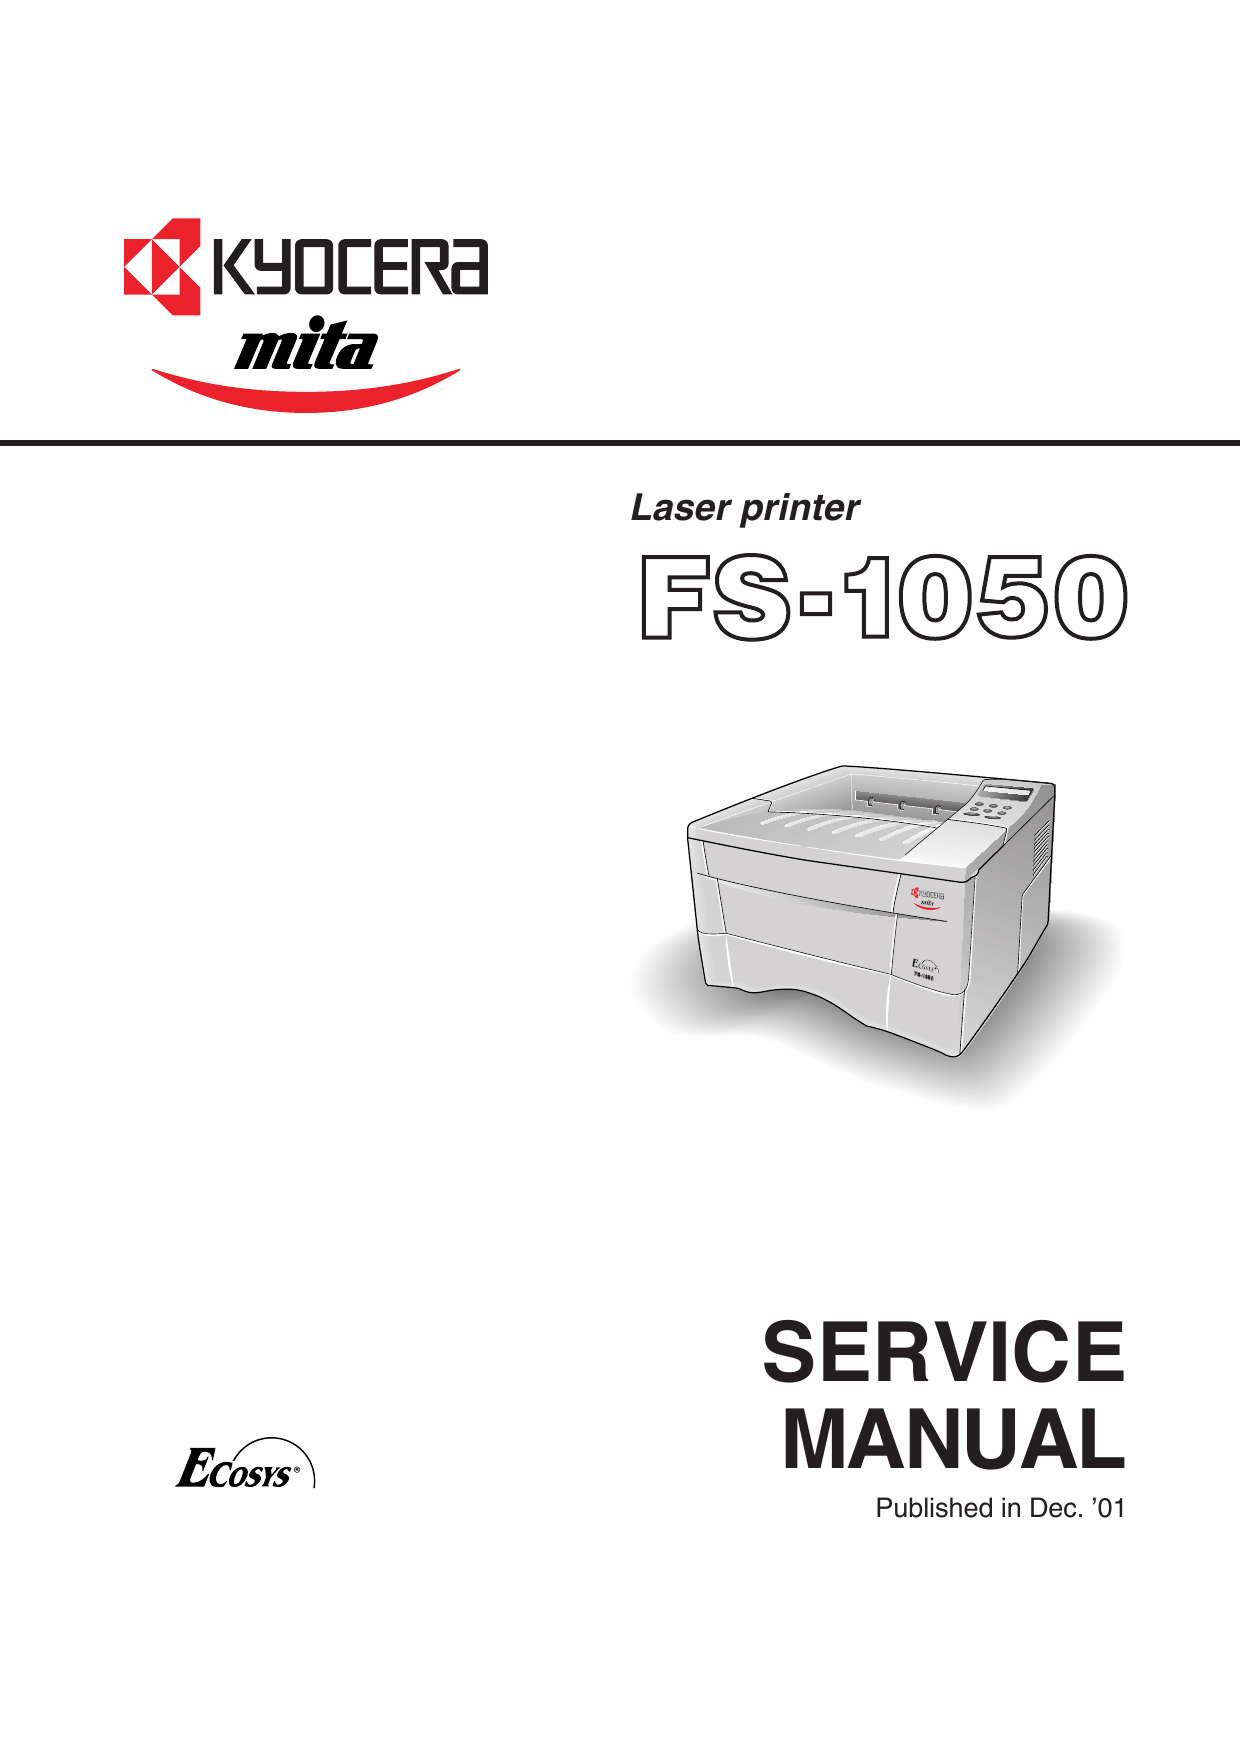 KYOCERA LaserPrinter FS-1050 Parts and Service Manual-1